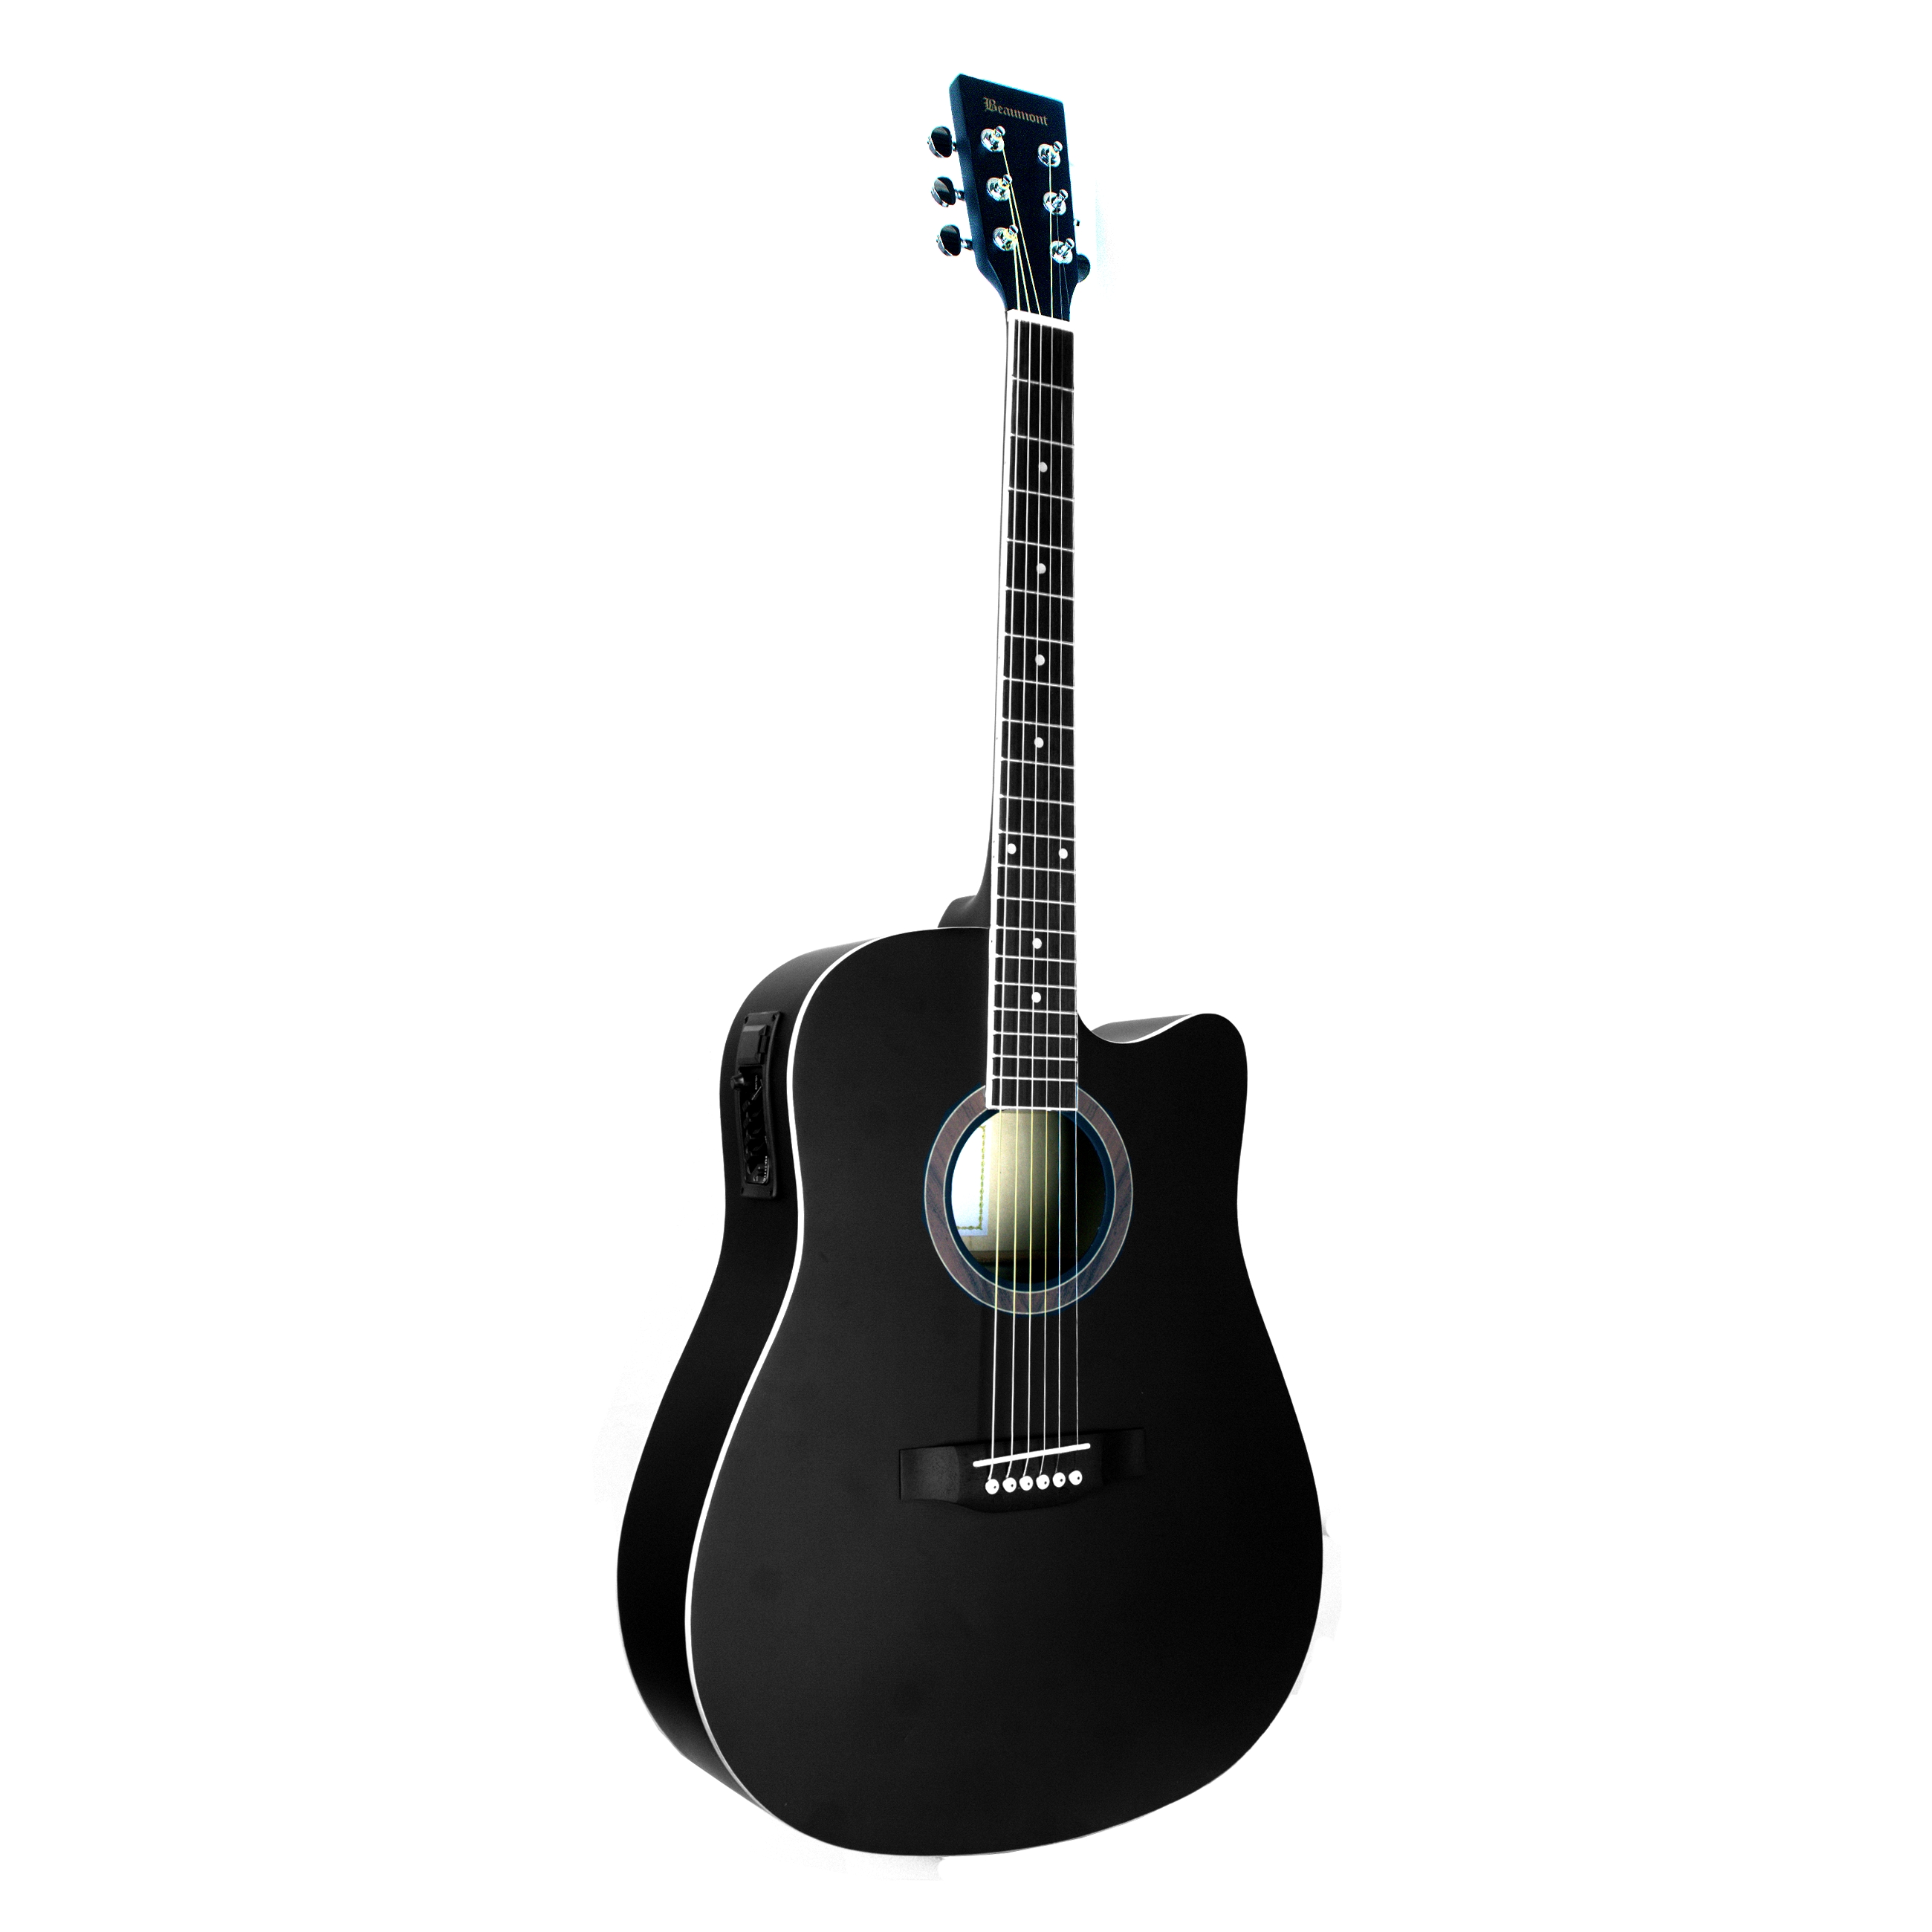 BEAUMONT DG80CE/BK - электроакустическая гитара с вырезом, корпус липа, цвет черный, матовый 